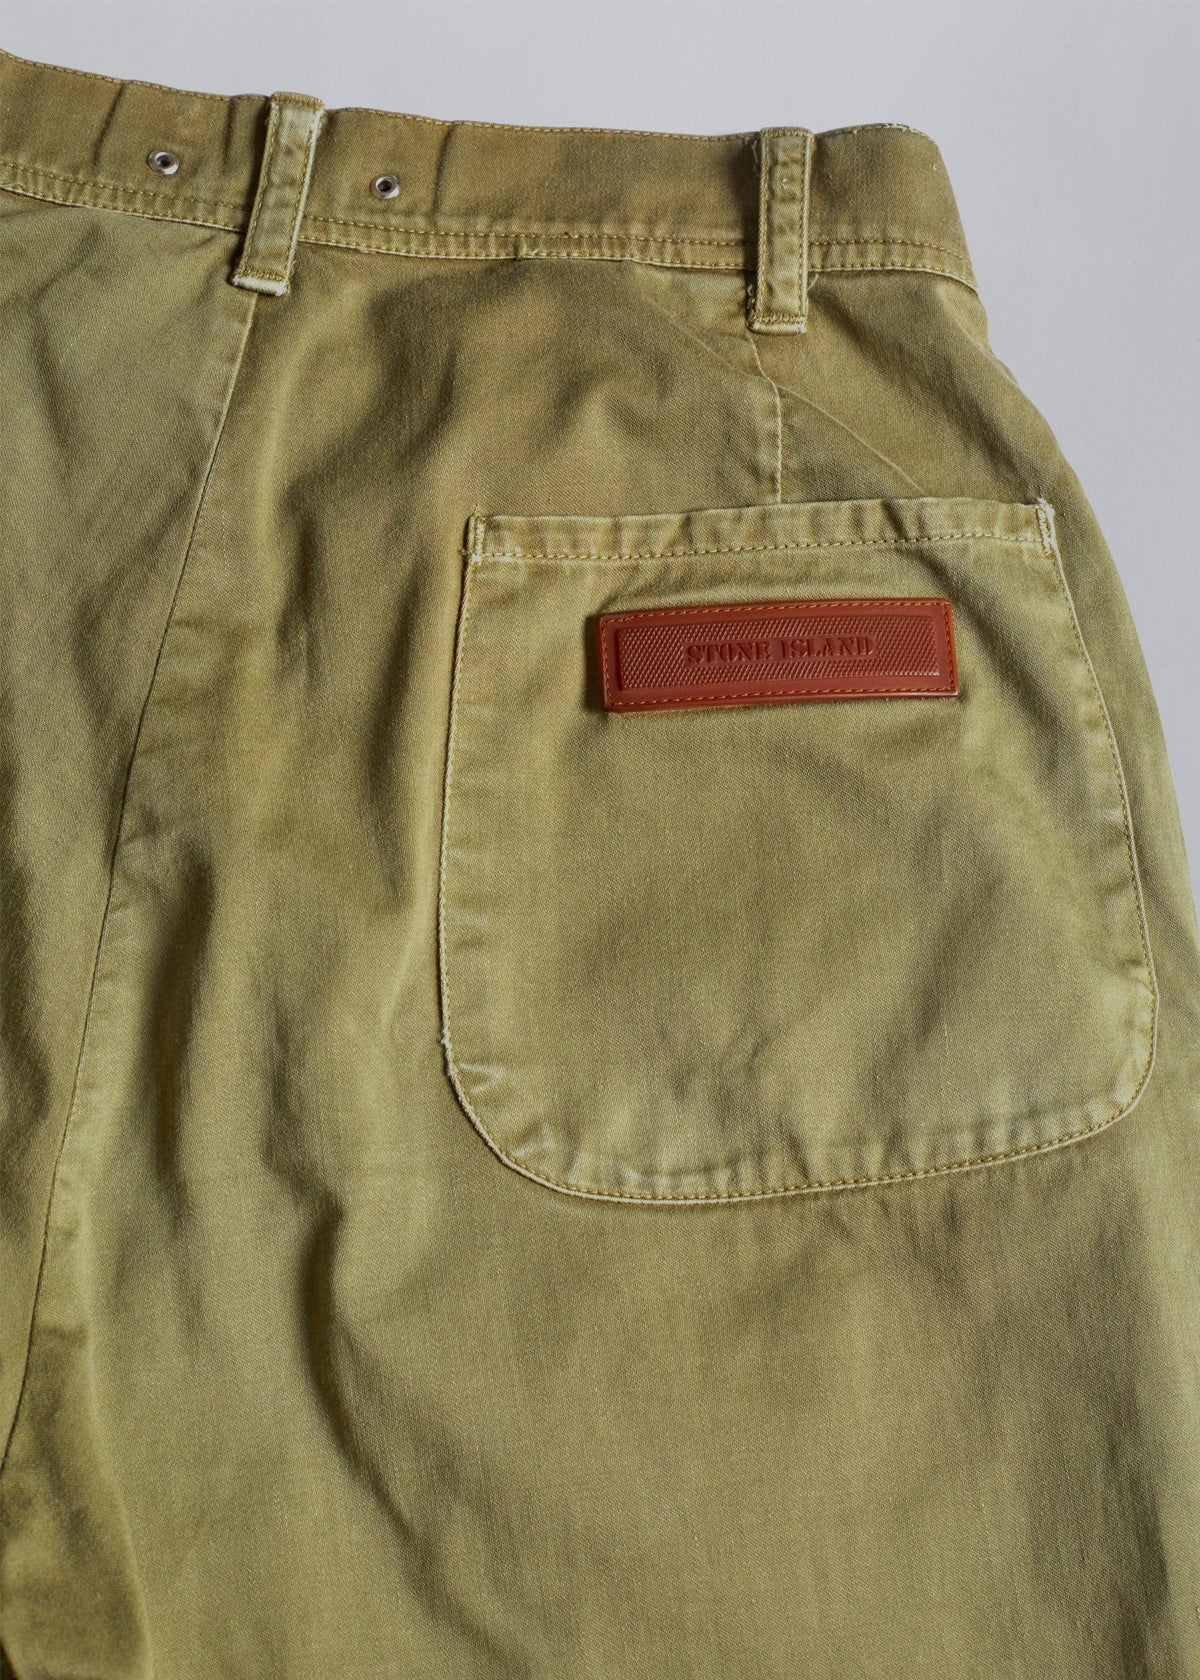 Rubber Logo Cotton Pants 1980s - 27 - The Archivist Store